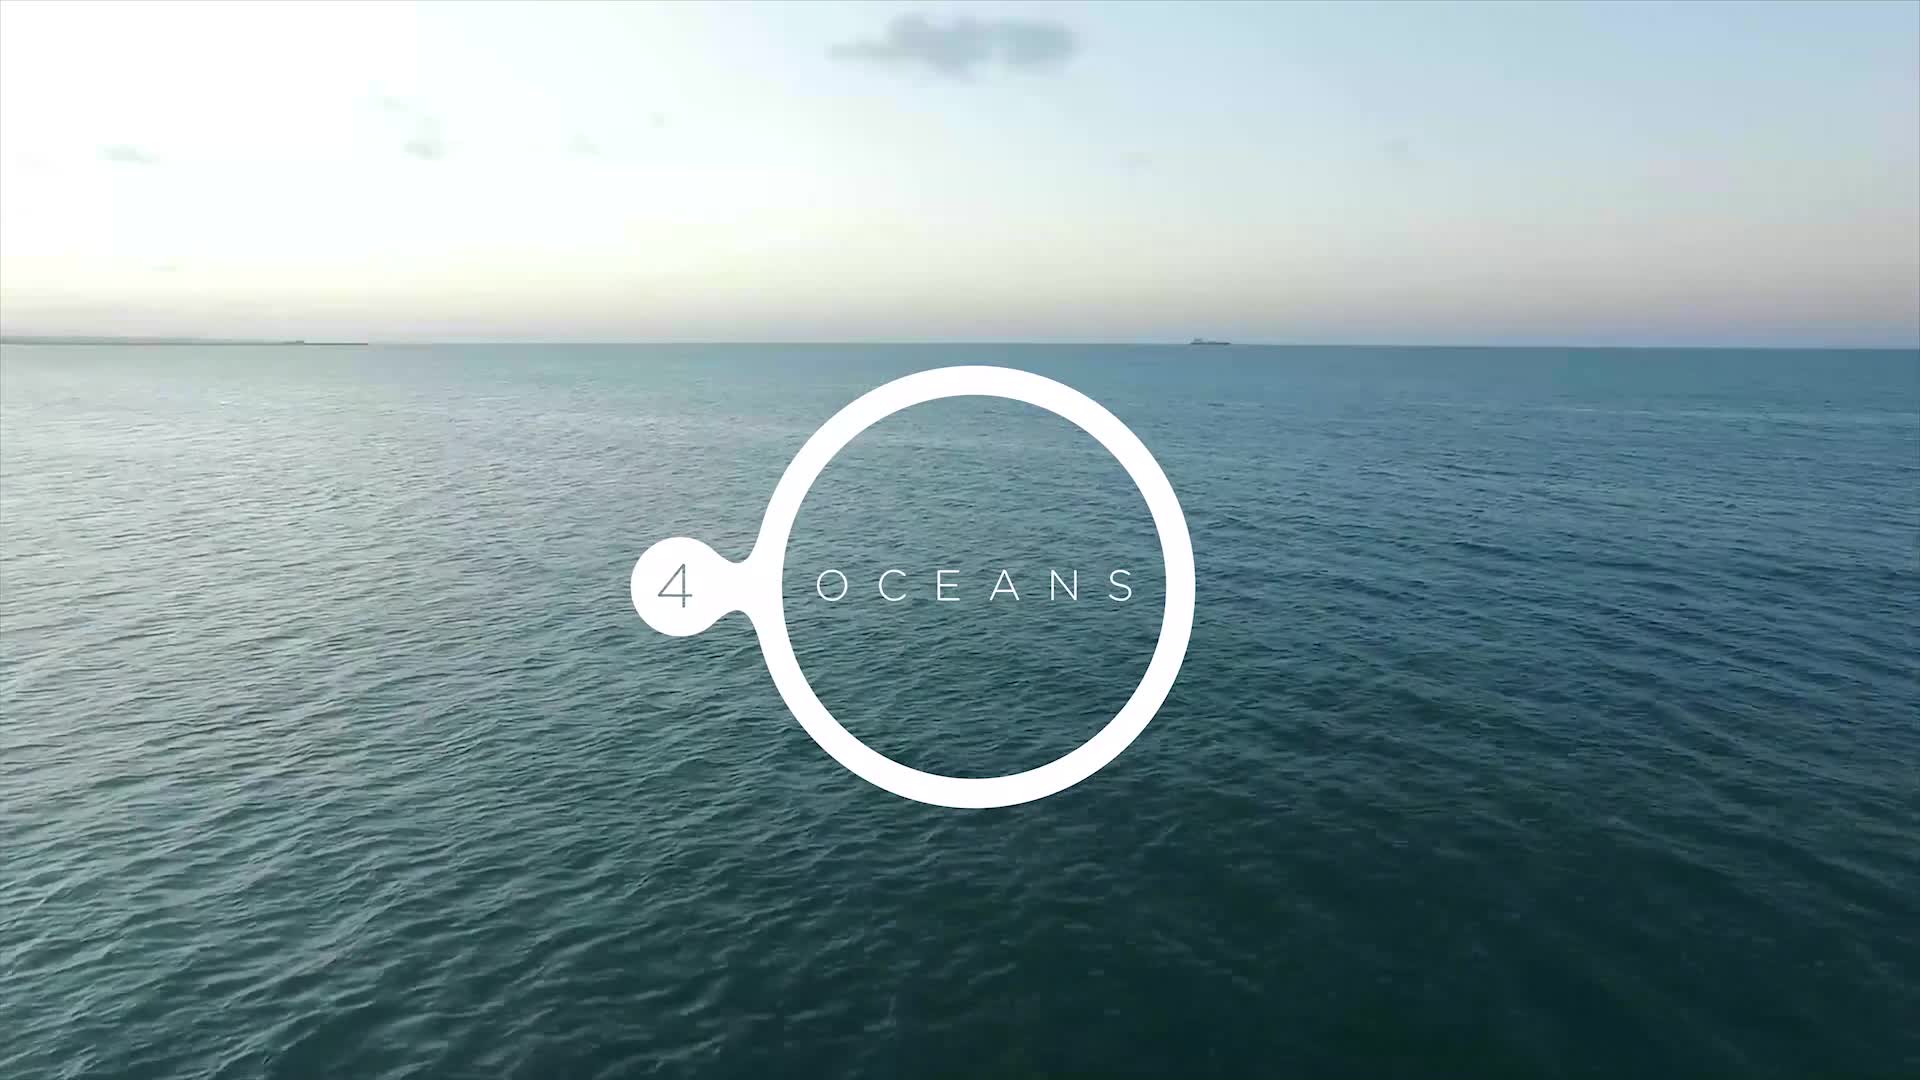  4 oceans